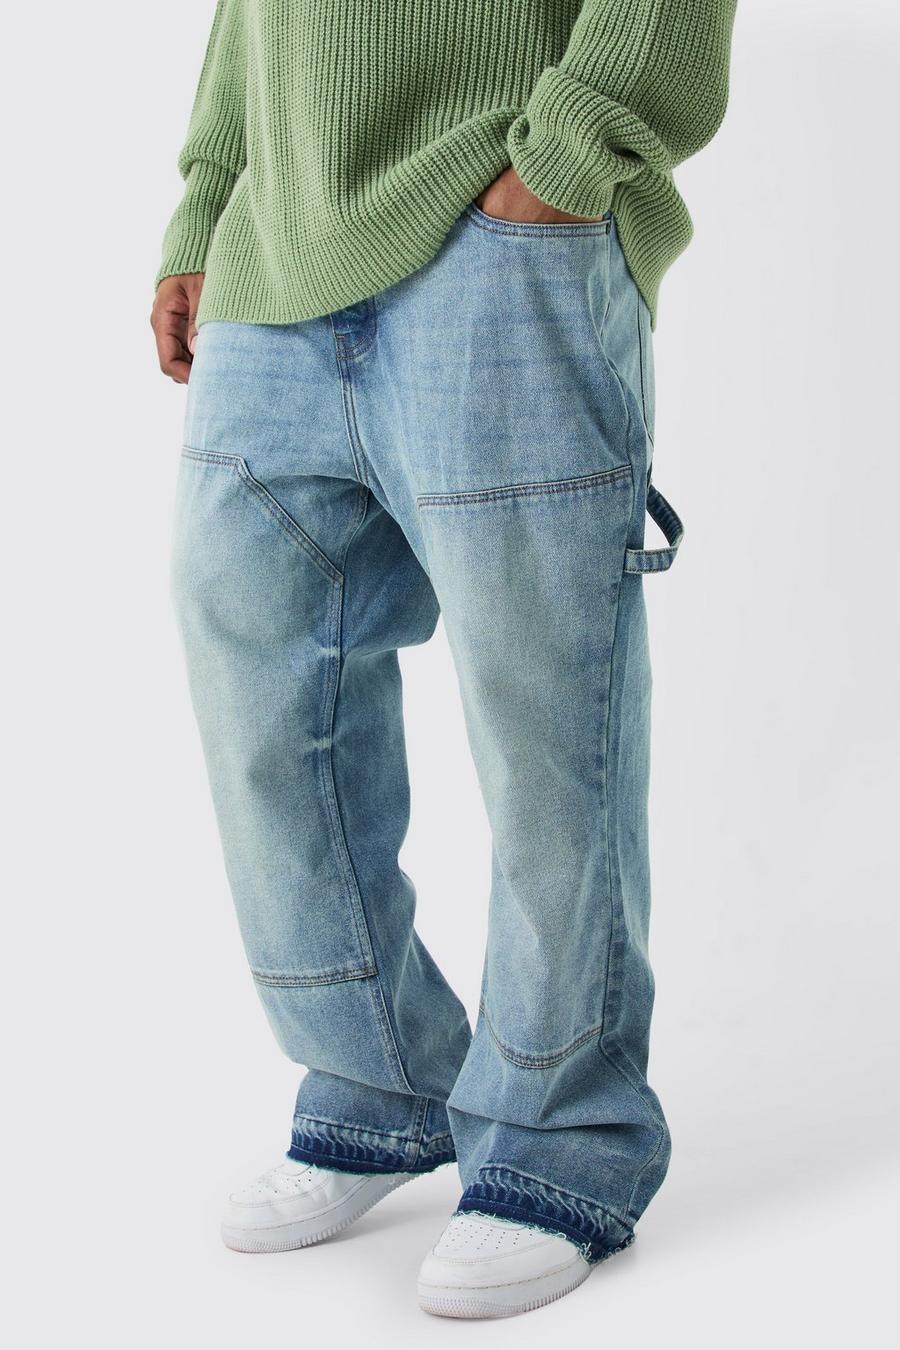 Jeans a zampa Plus Size Slim Fit in denim rigido stile Carpenter, Antique blue